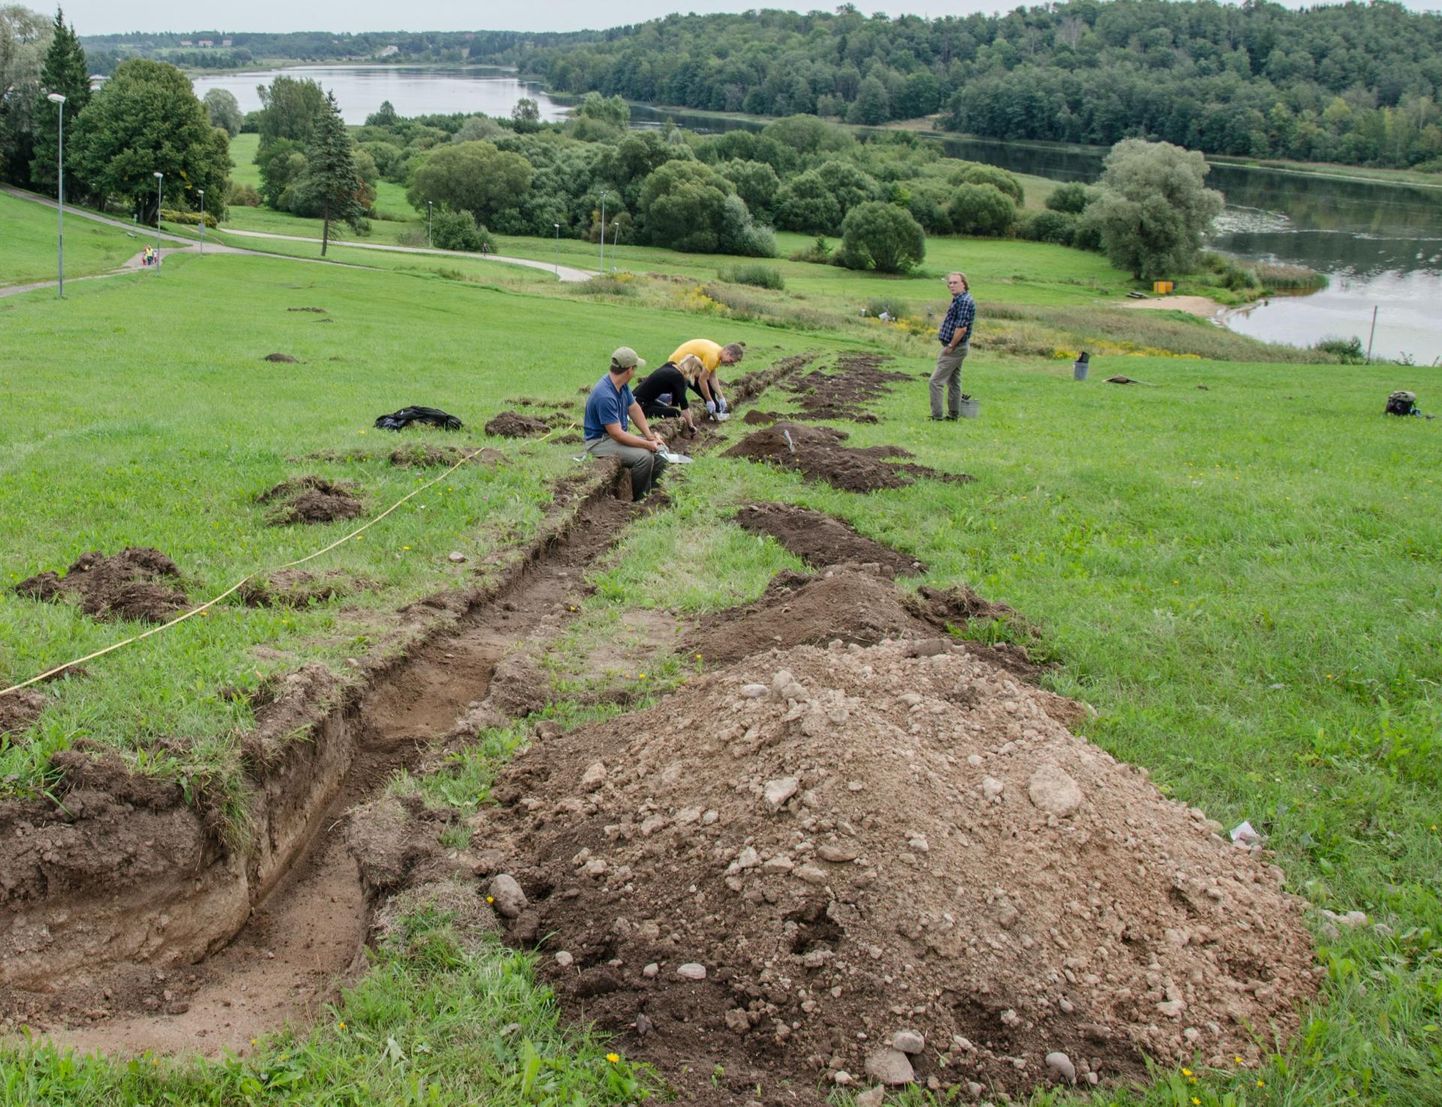 Viljandi ürgoru nõlval Huntaugu mäel tehtud arheoloogilised eeluuringud andsid tunnistust sellest, et seal oli muinasasula, kus inimesed elasid arvatavasti viikingiajast muinasaja lõpuni.